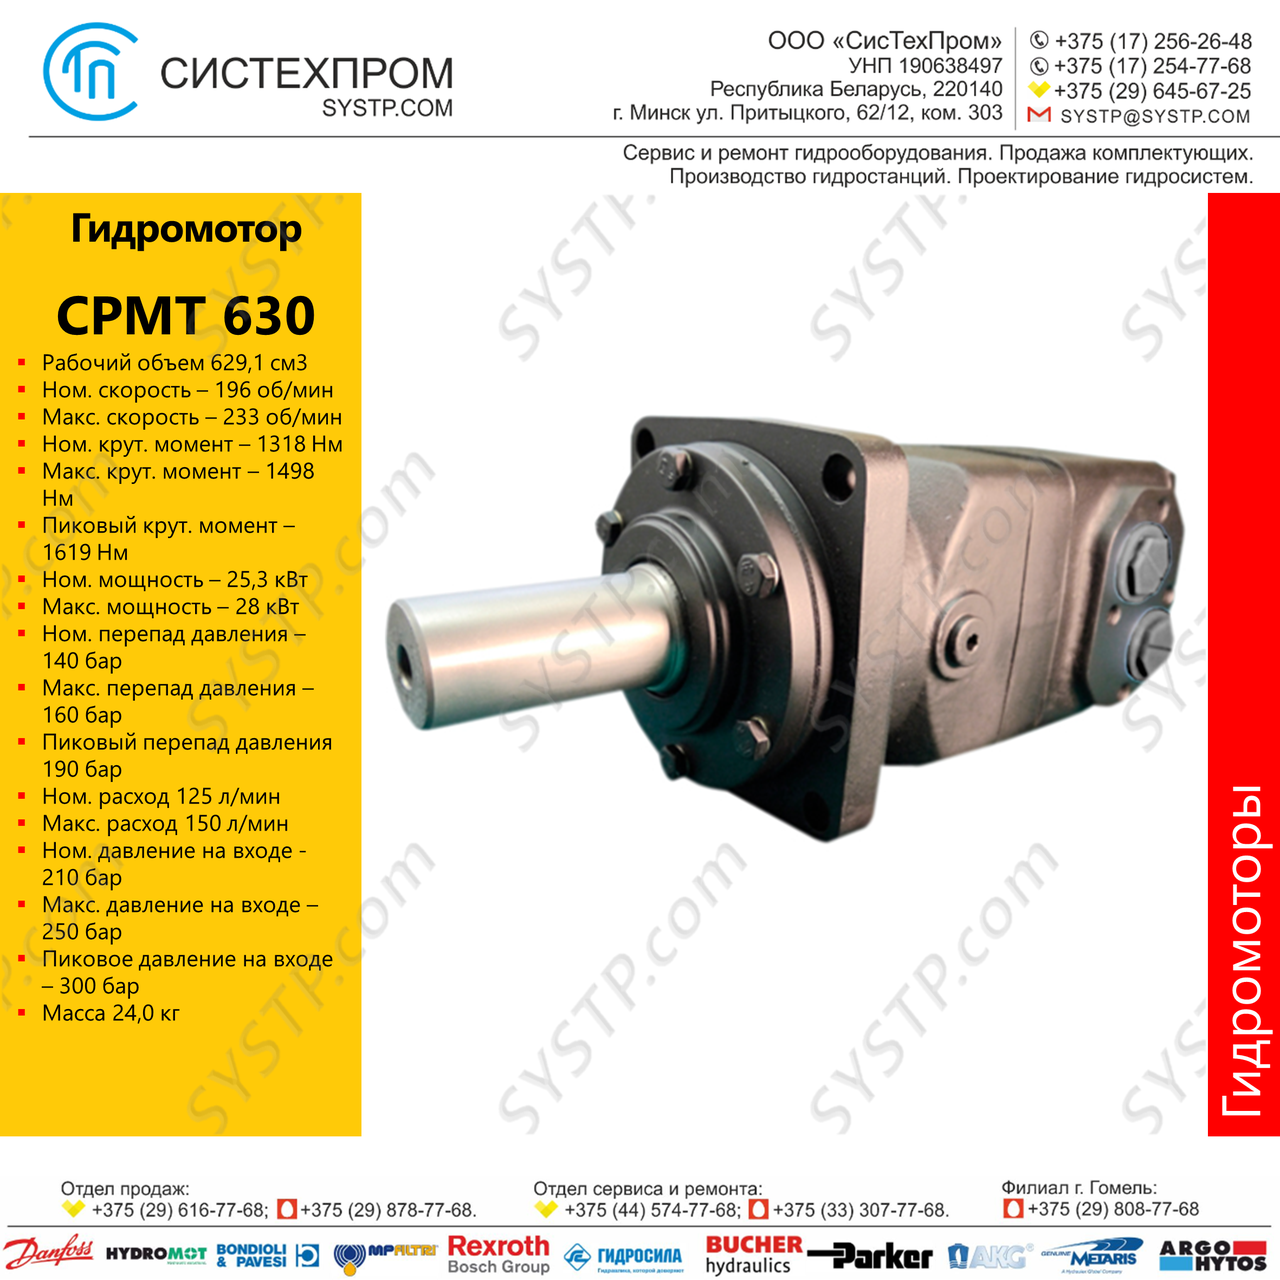 Гидромотор CPMT 630, фото 1